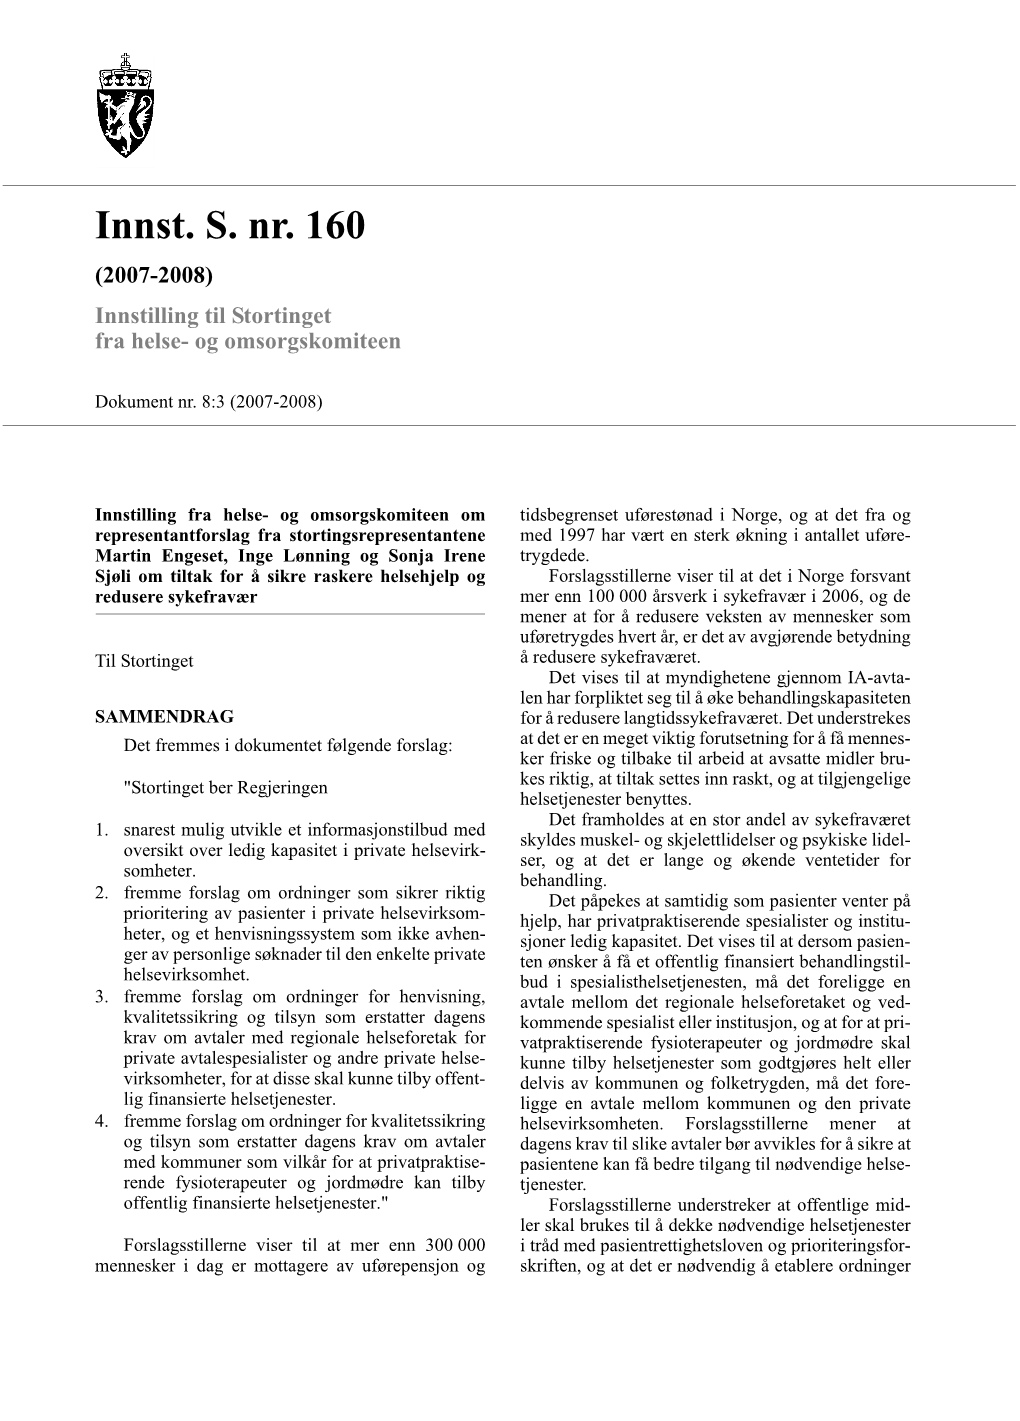 Innst. S. Nr. 160 (2007-2008) Innstilling Til Stortinget Fra Helse- Og Omsorgskomiteen